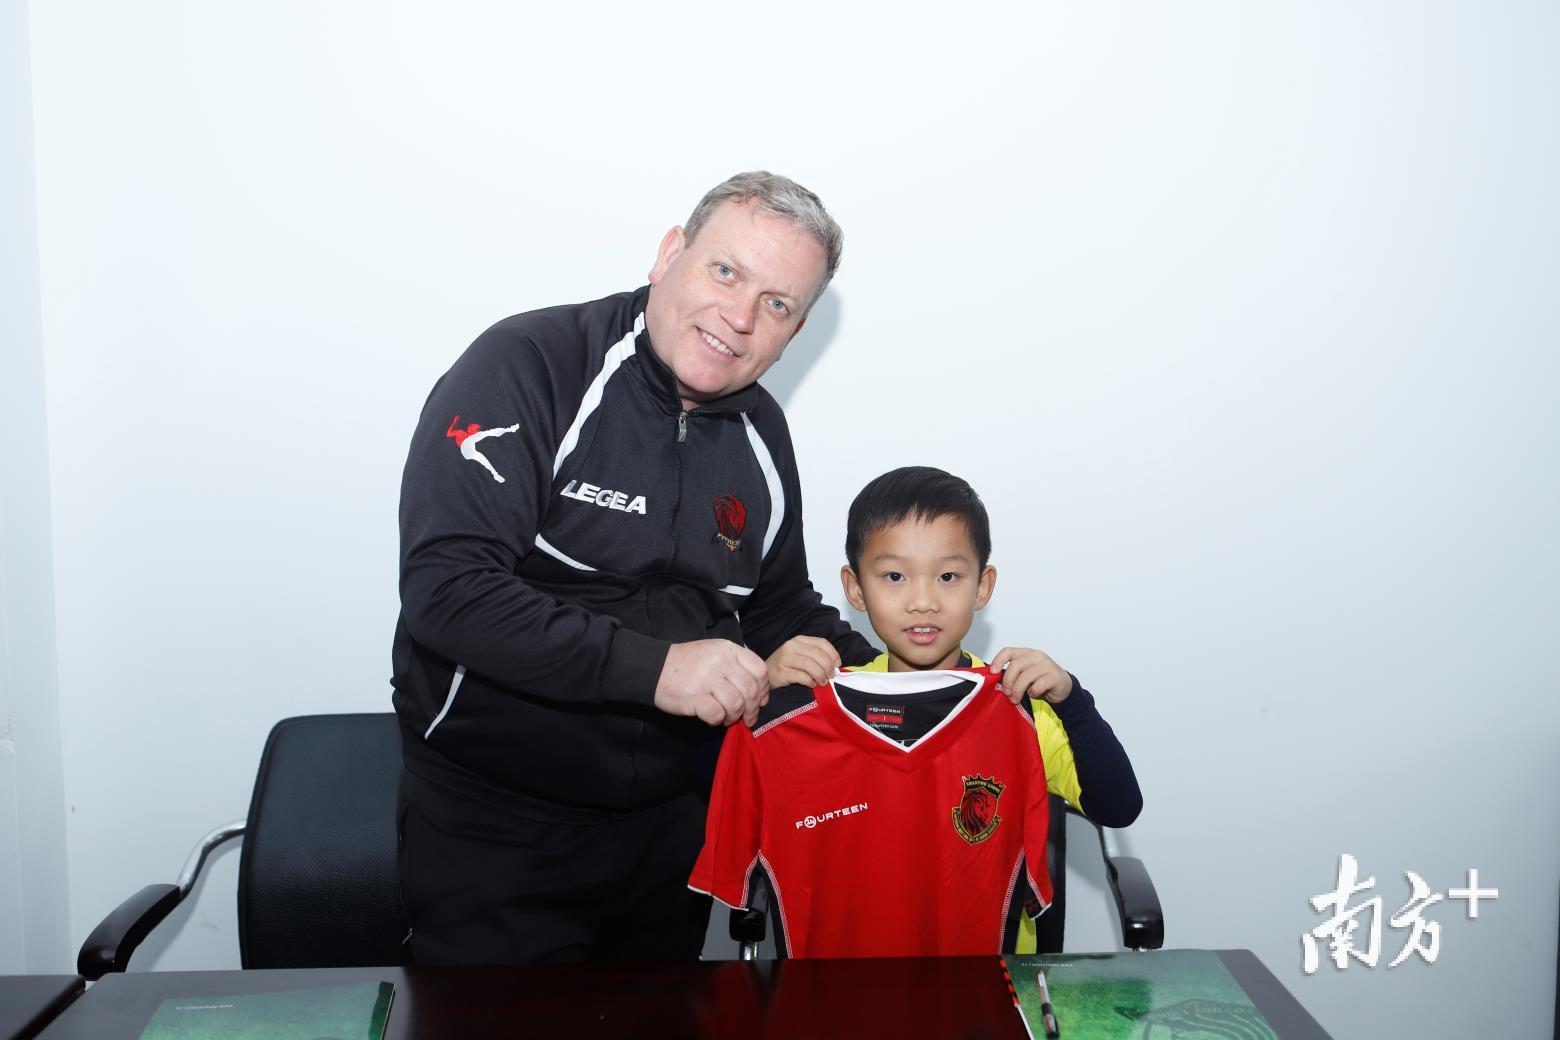 陈伦岳(右)加盟汕头雄狮足球俱乐部精英梯队，成为该俱乐部精英梯队签约年龄最小的球员。